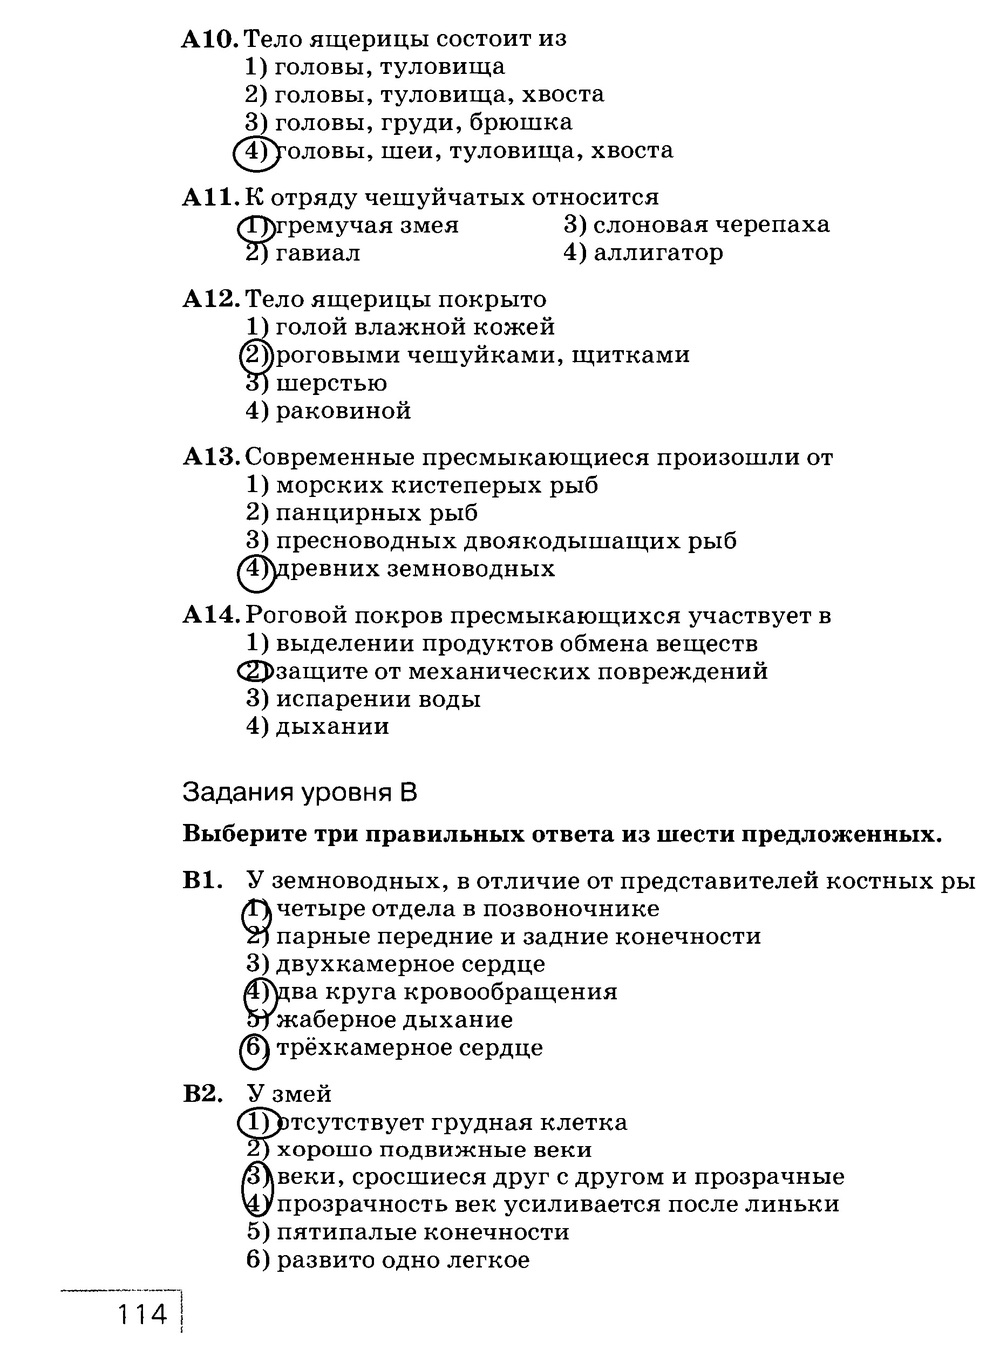 Рабочая тетрадь, 7 класс, Захаров В.Б., Сонин Н.И., 2015, задание: стр. 114